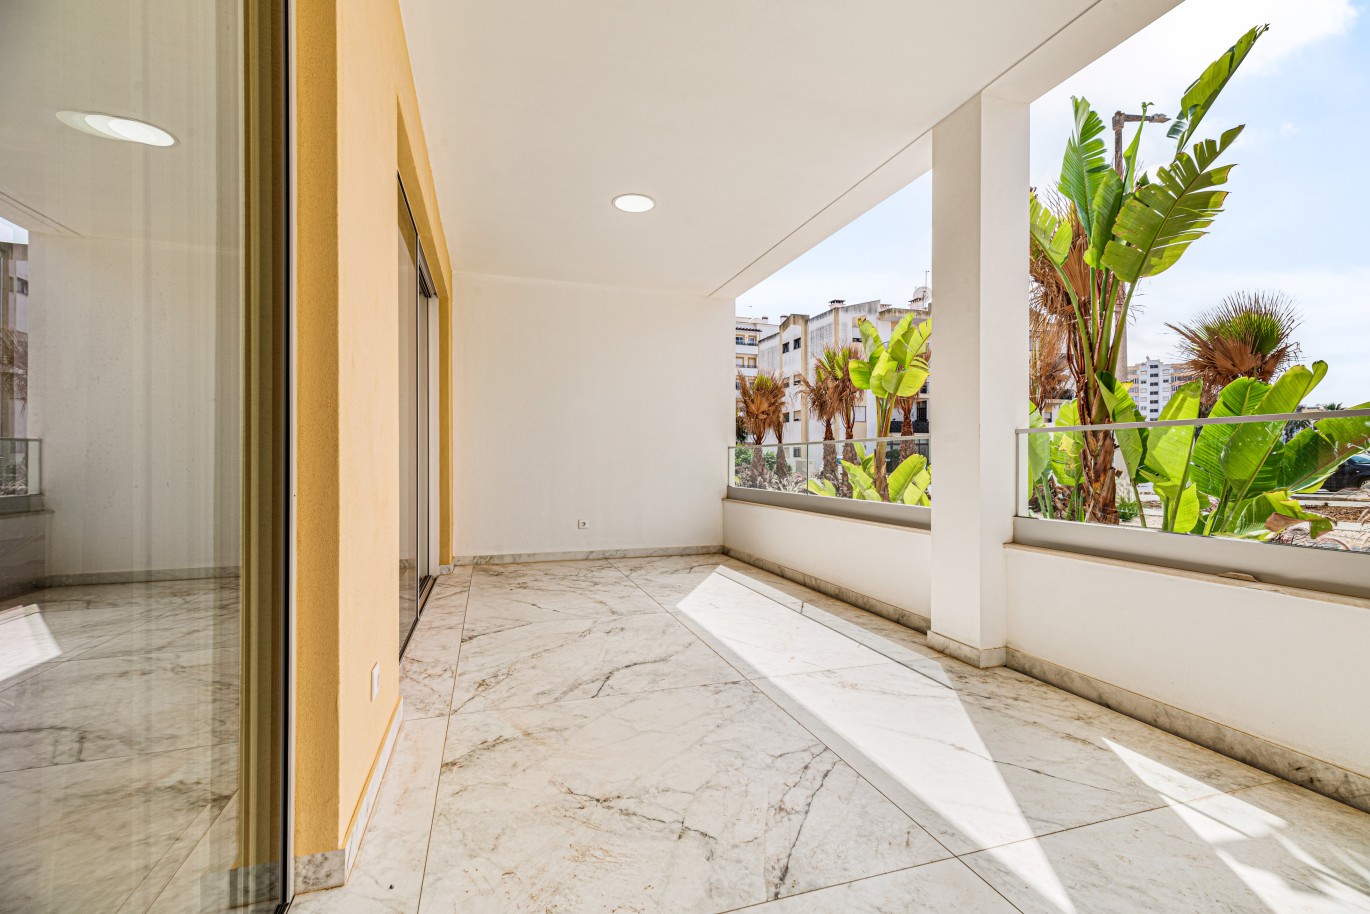 Apartamento, com terraço, para venda, em Lagos, Algarve_237981